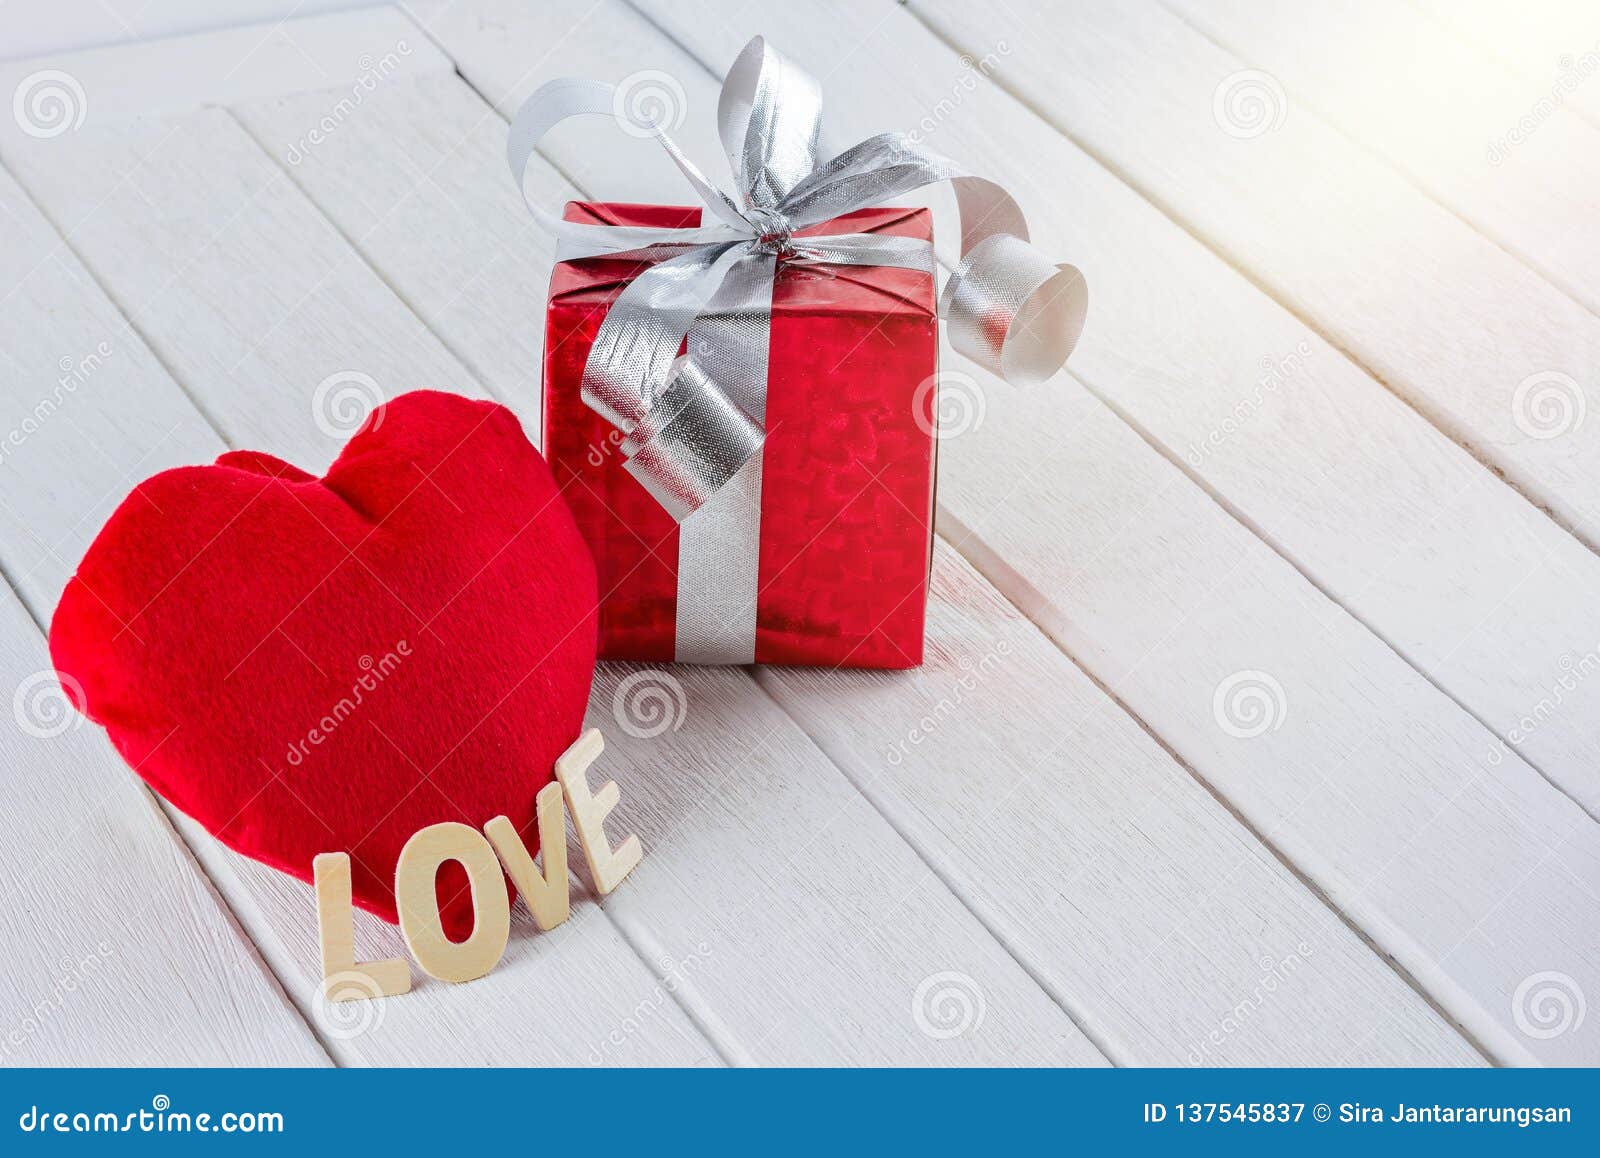 Amor vales Fichas cupones Funny Marfil De Madera Corazón Día de San Valentín Regalo # 2